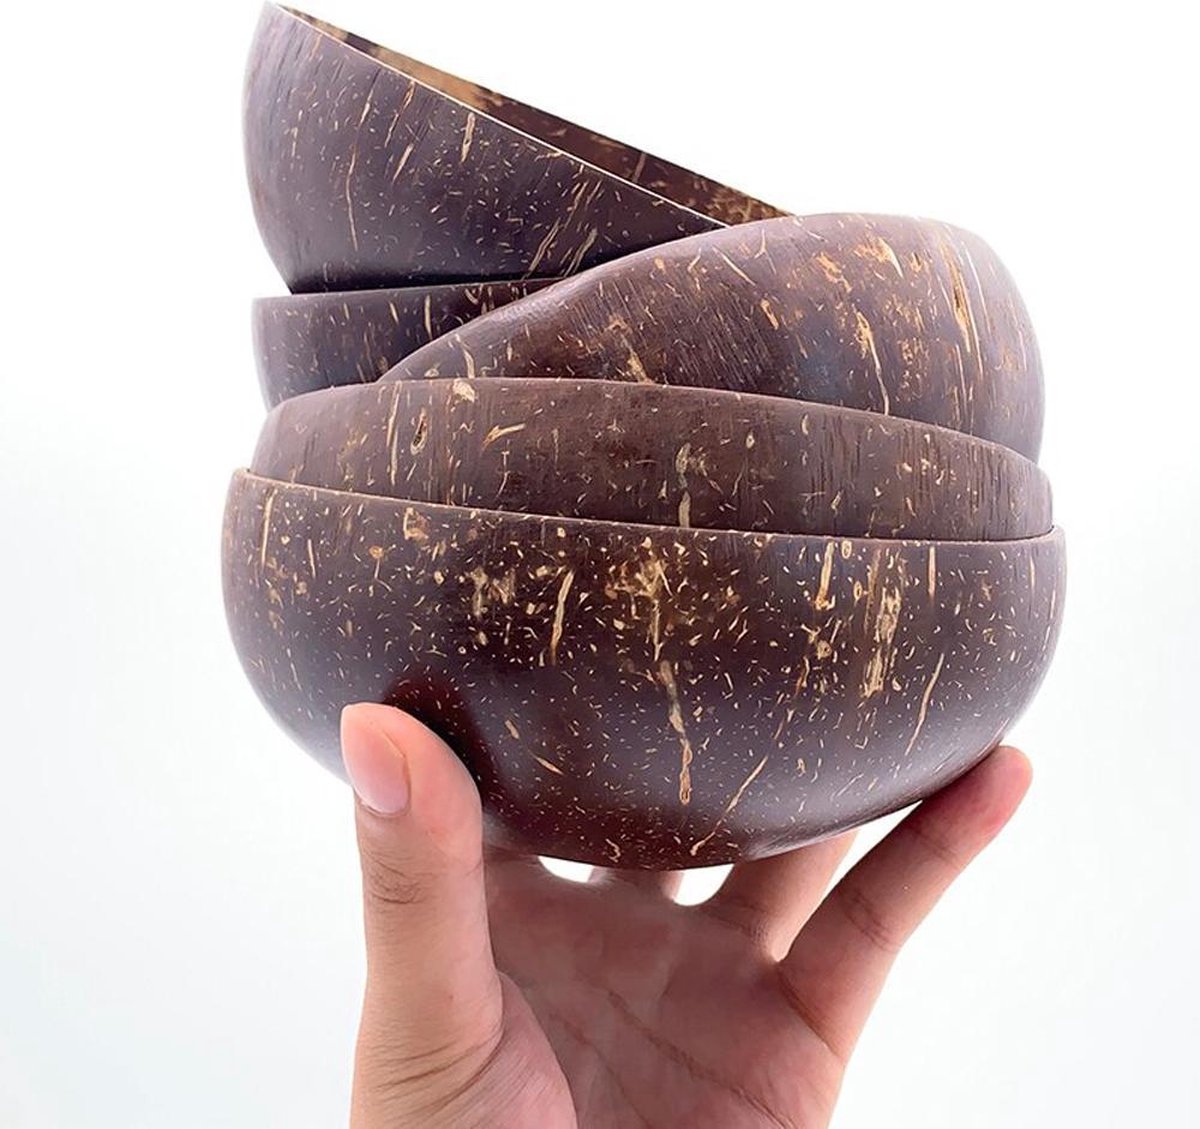 Coconut Bowl - 4 Stuks - Kokosnoot kom - Eco friendly - Kokosnoot kommetjes - Kokoksnoot schaal - Kokosnootkom - Kosh & Co